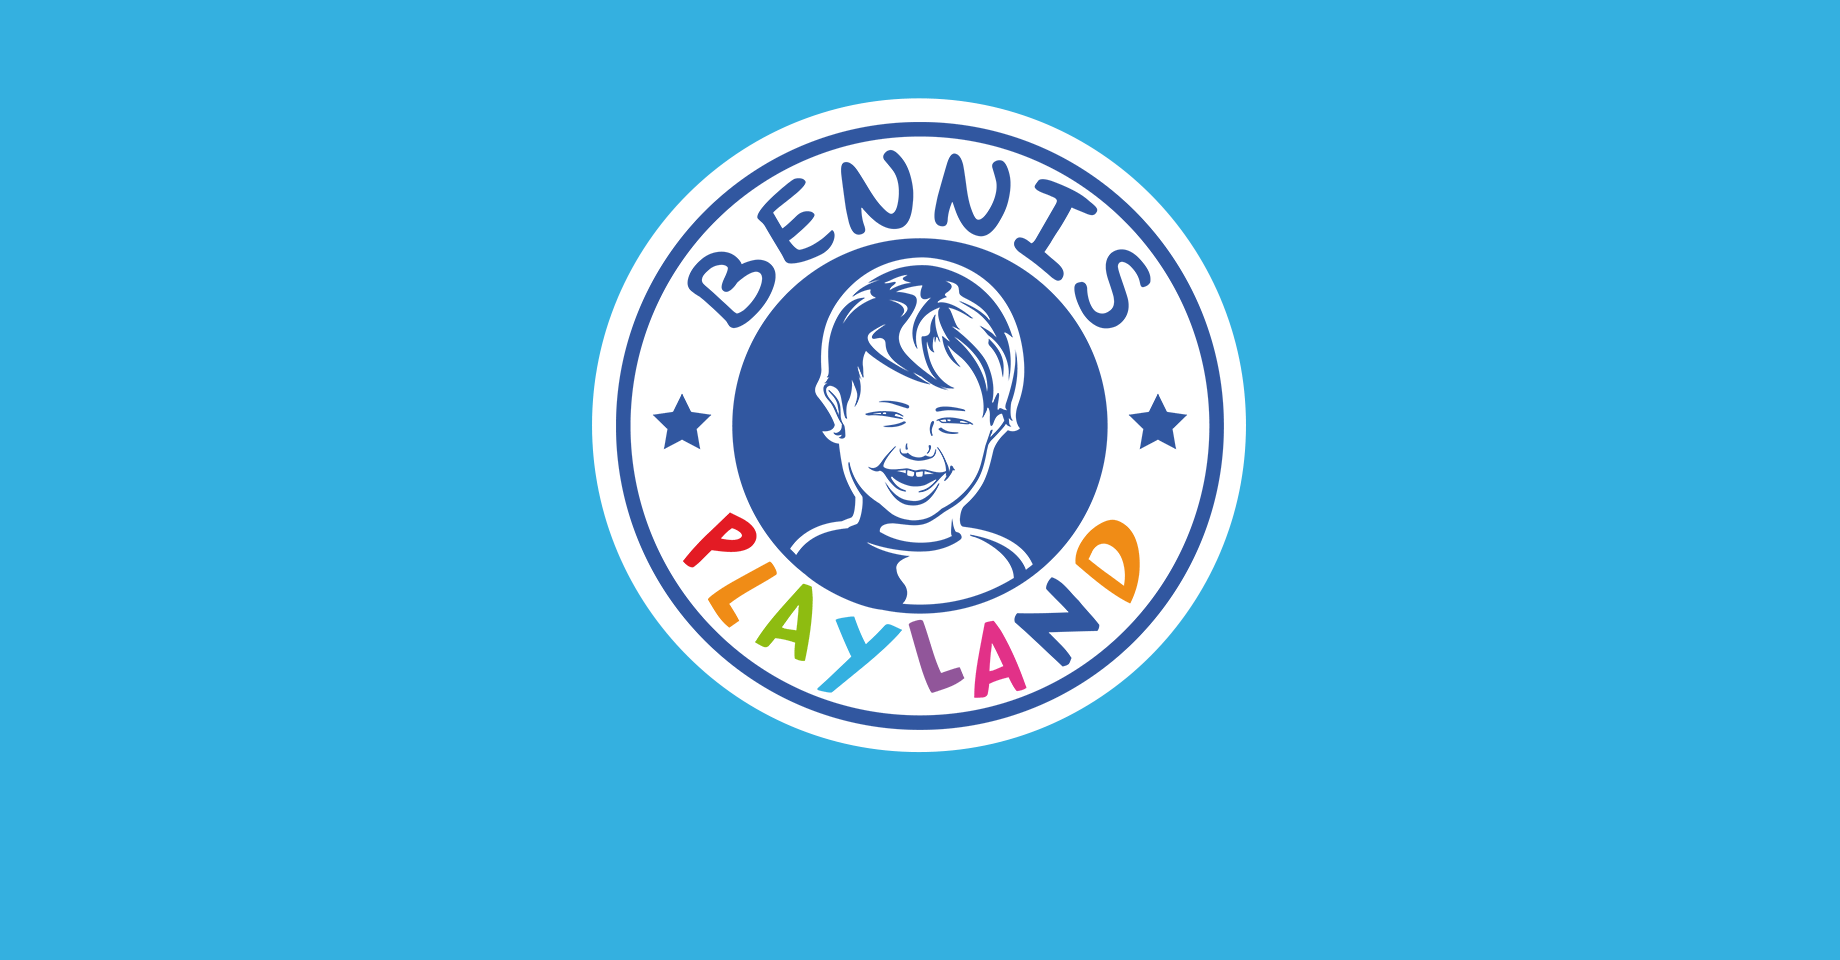 Logo Bennis Playland